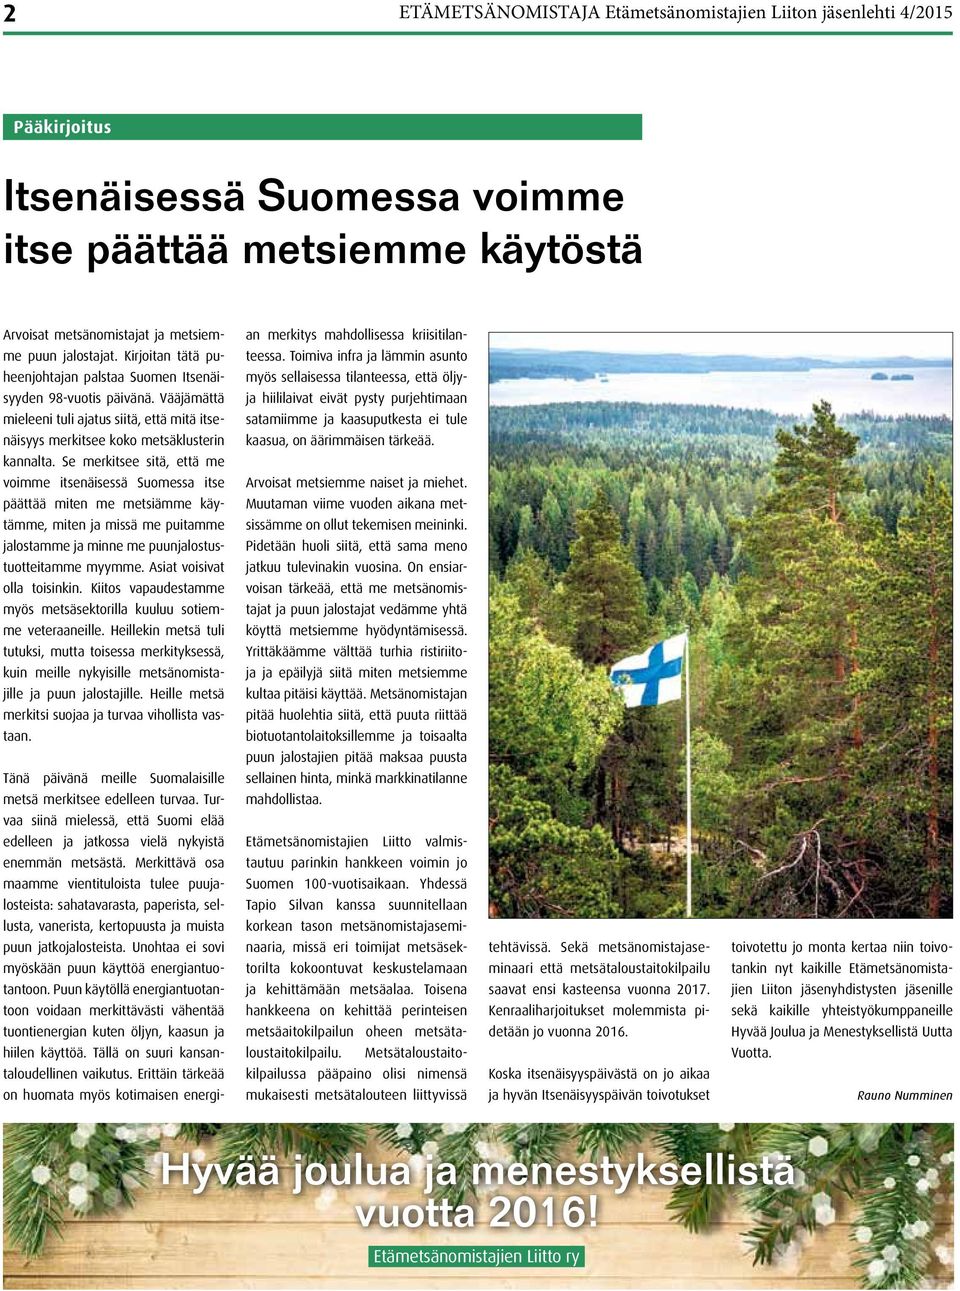 Se merkitsee sitä, että me voimme itsenäisessä Suomessa itse päättää miten me metsiämme käytämme, miten ja missä me puitamme jalostamme ja minne me puunjalostustuotteitamme myymme.